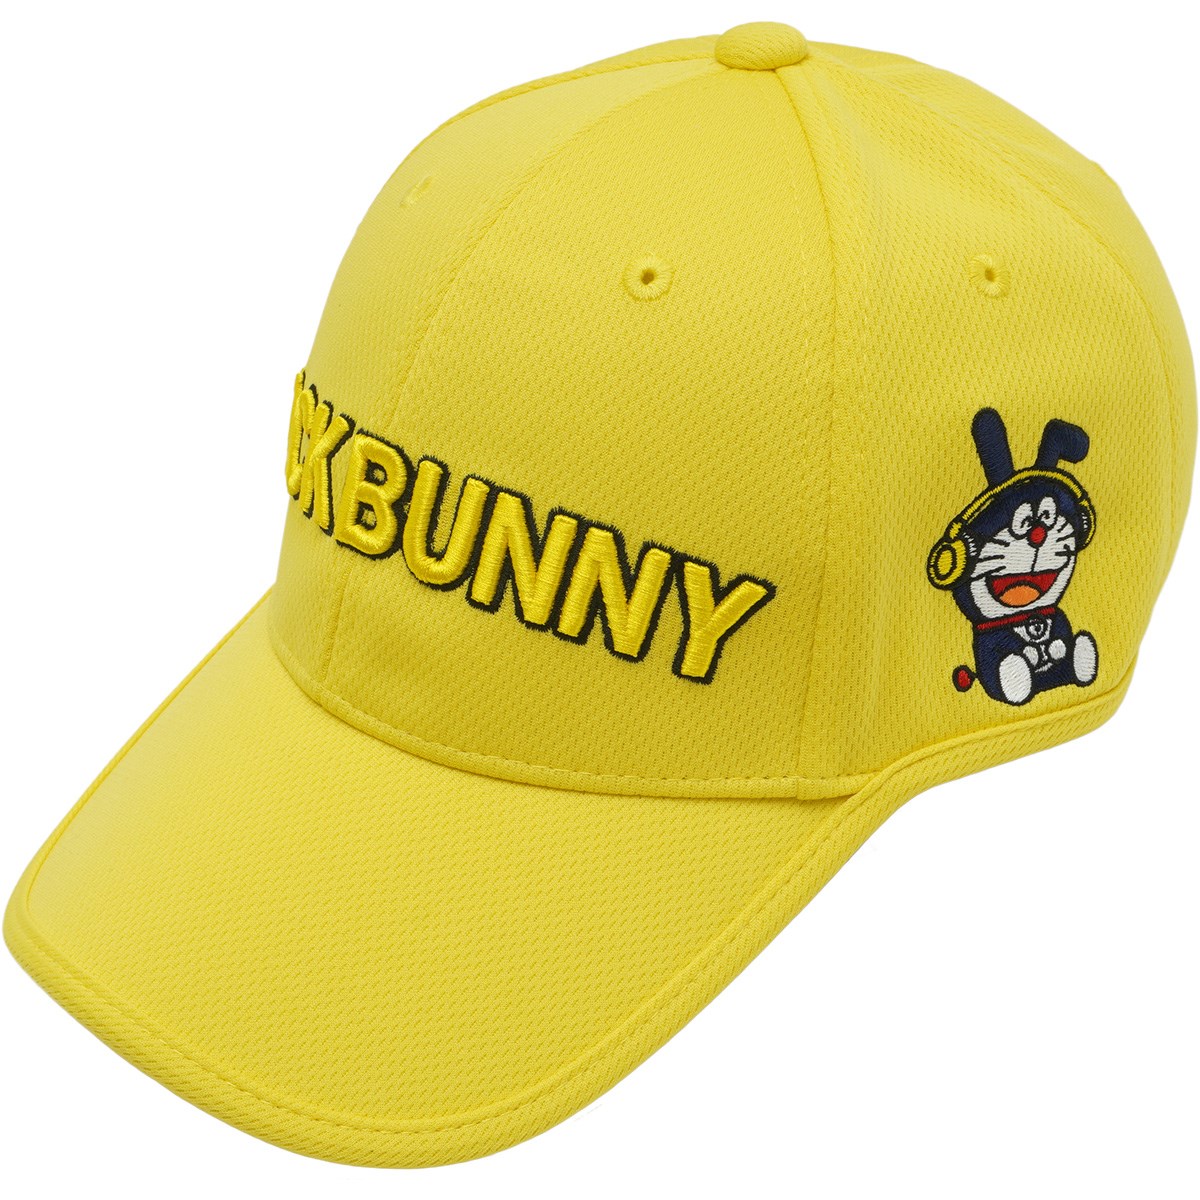 最高の品質の bunny!! jack ジャックバニー ゴルフ キャップ ドラえもん - アクセサリー - www.qiraatafrican.com